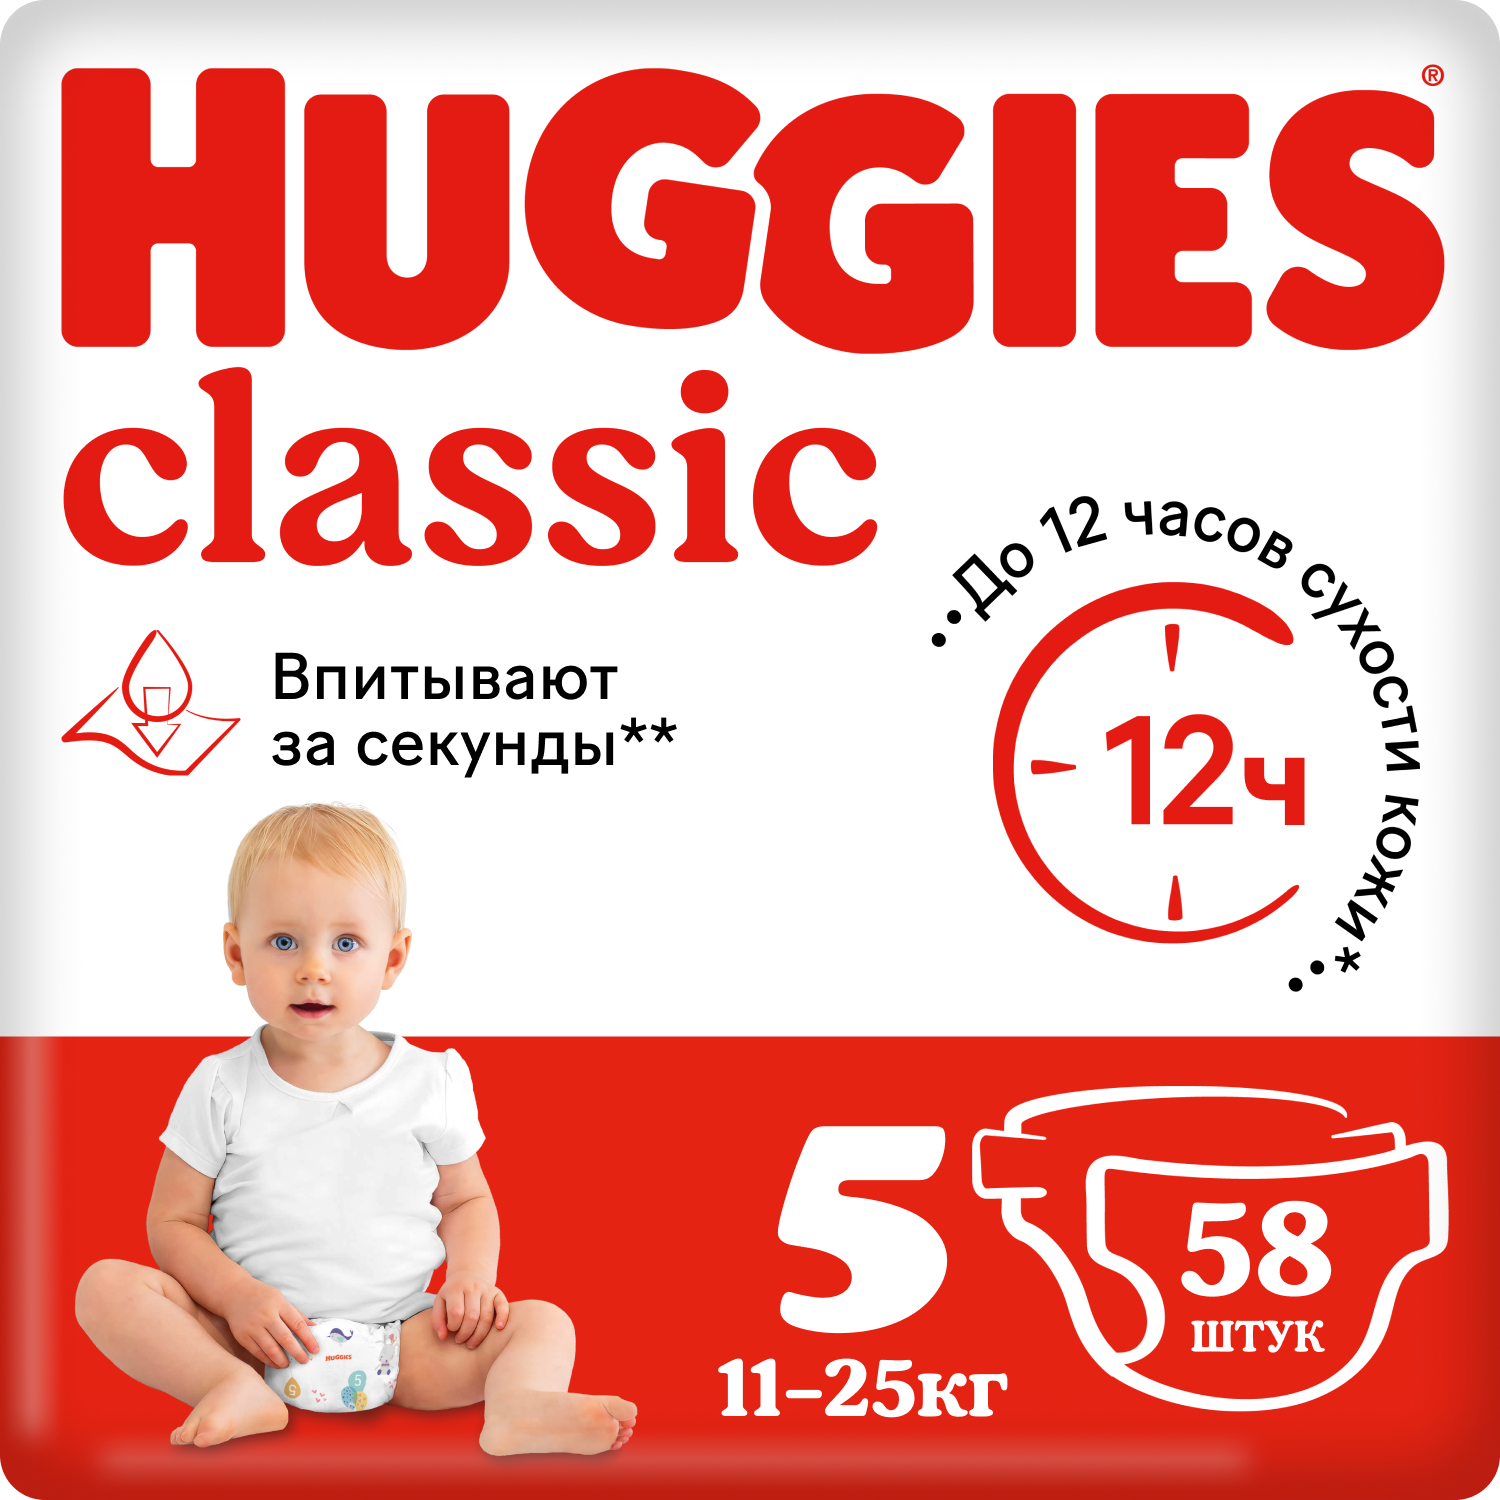 Подгузники Huggies Classic 5 (11-25 кг), 58 шт. подгузники huggies classic 4 7 18 кг 14 шт